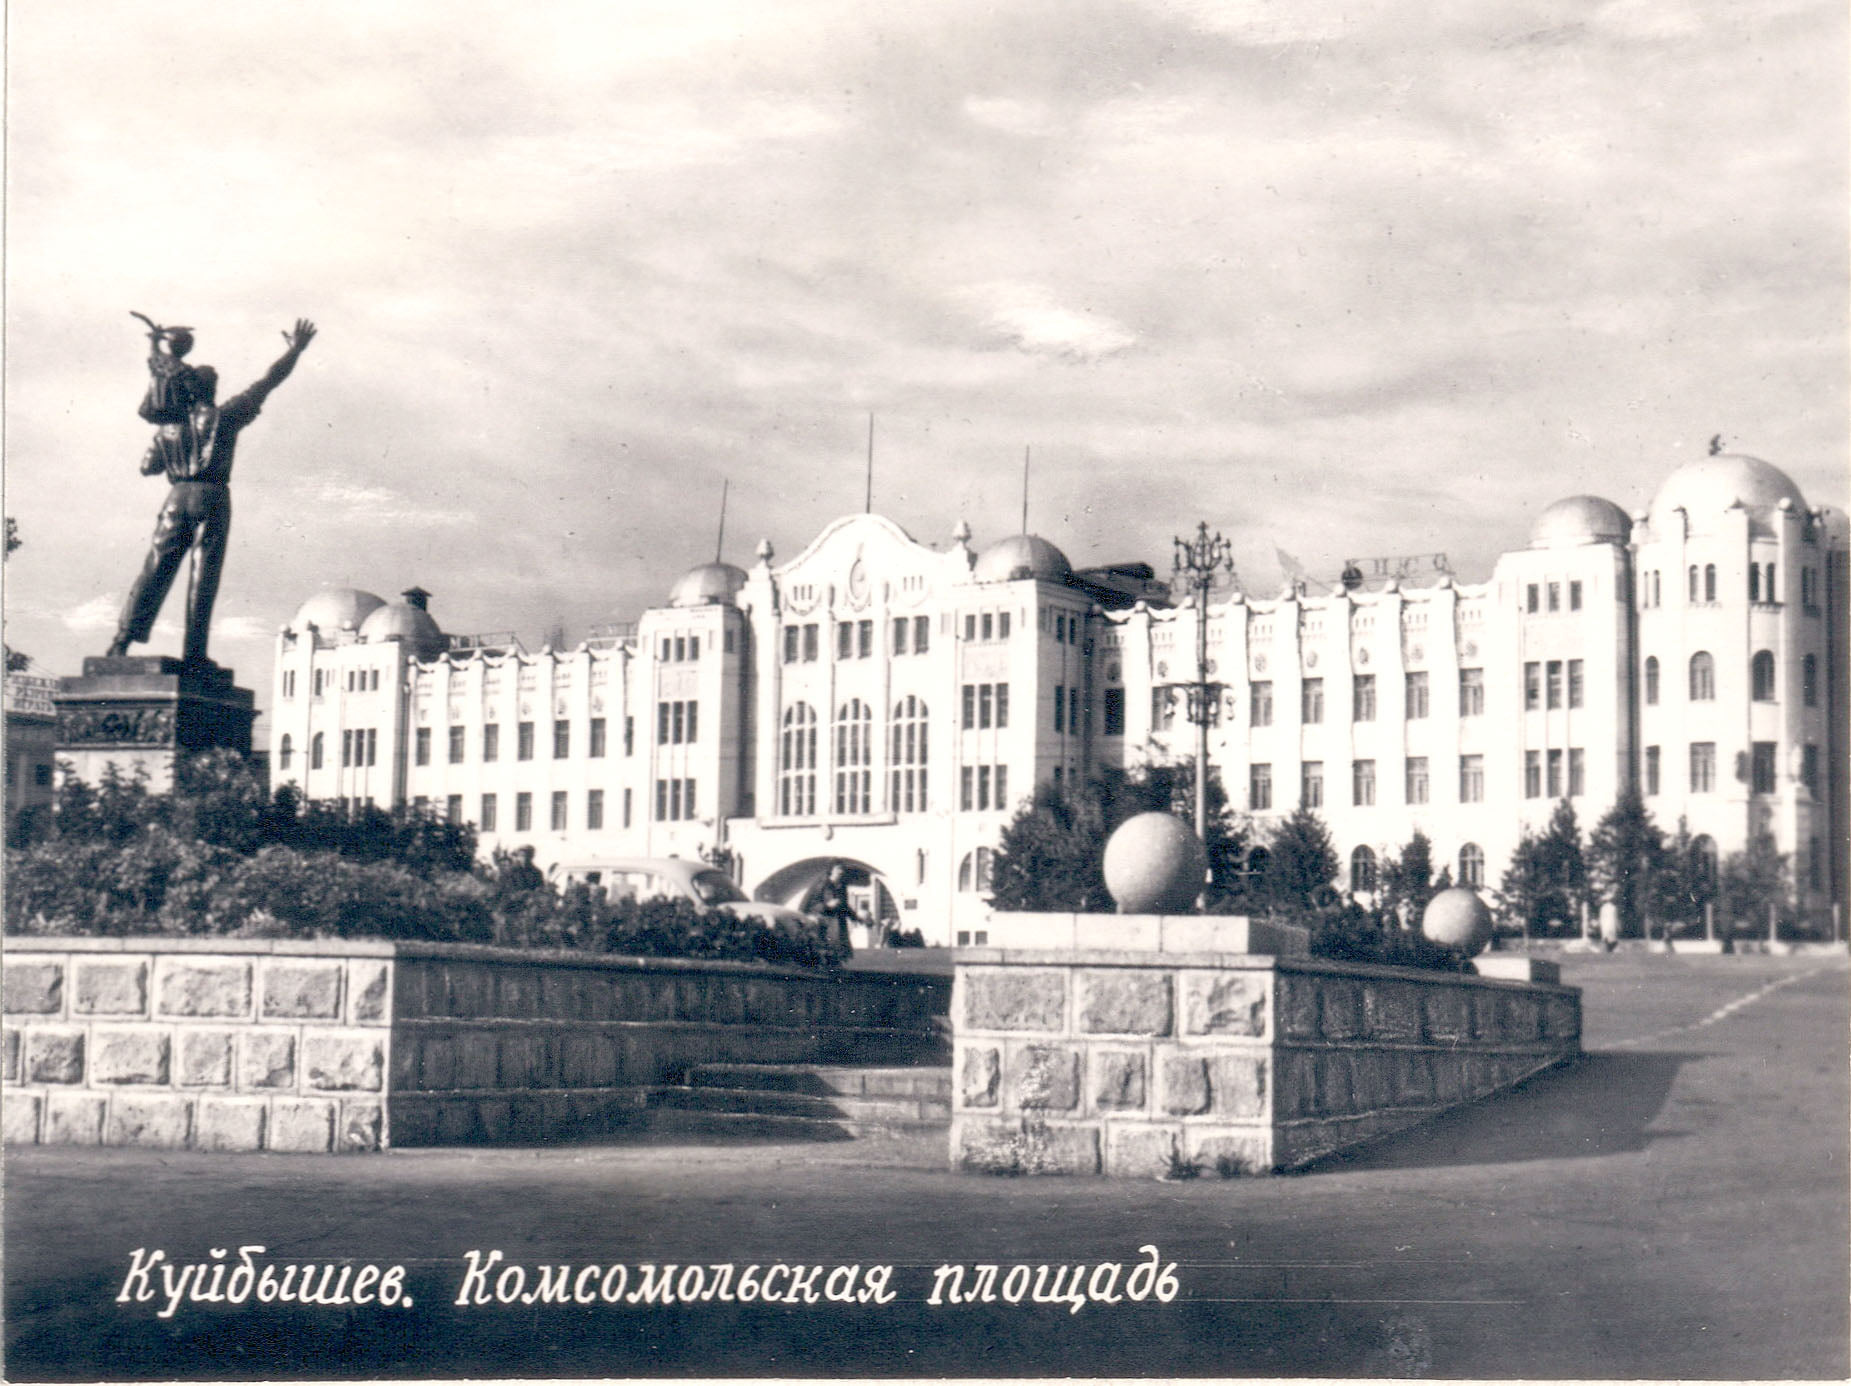 Памятника на Комсомольской площади нет уже давно